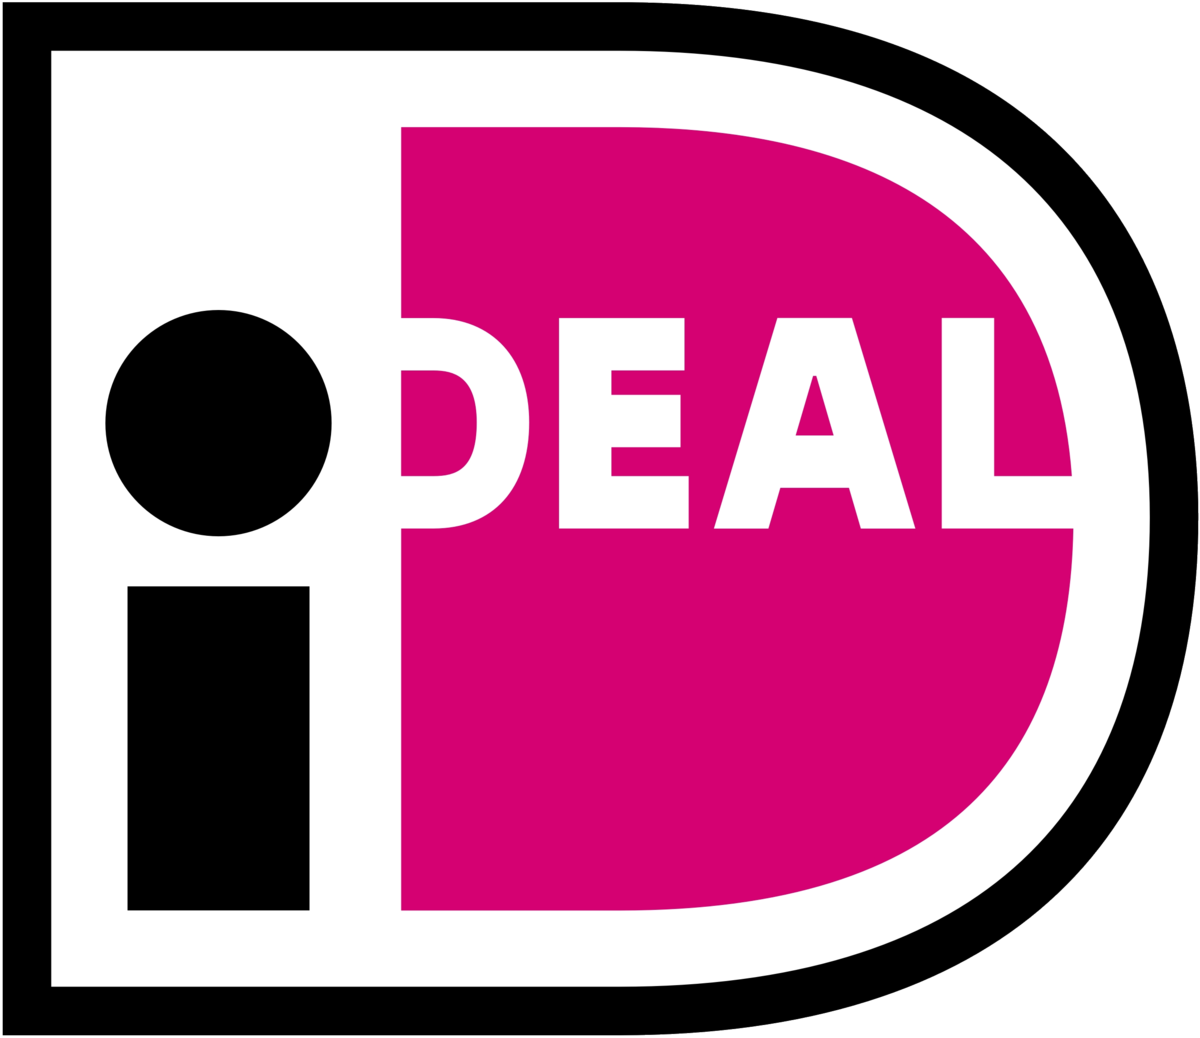 U kunt bij ons betalen met iDeal.